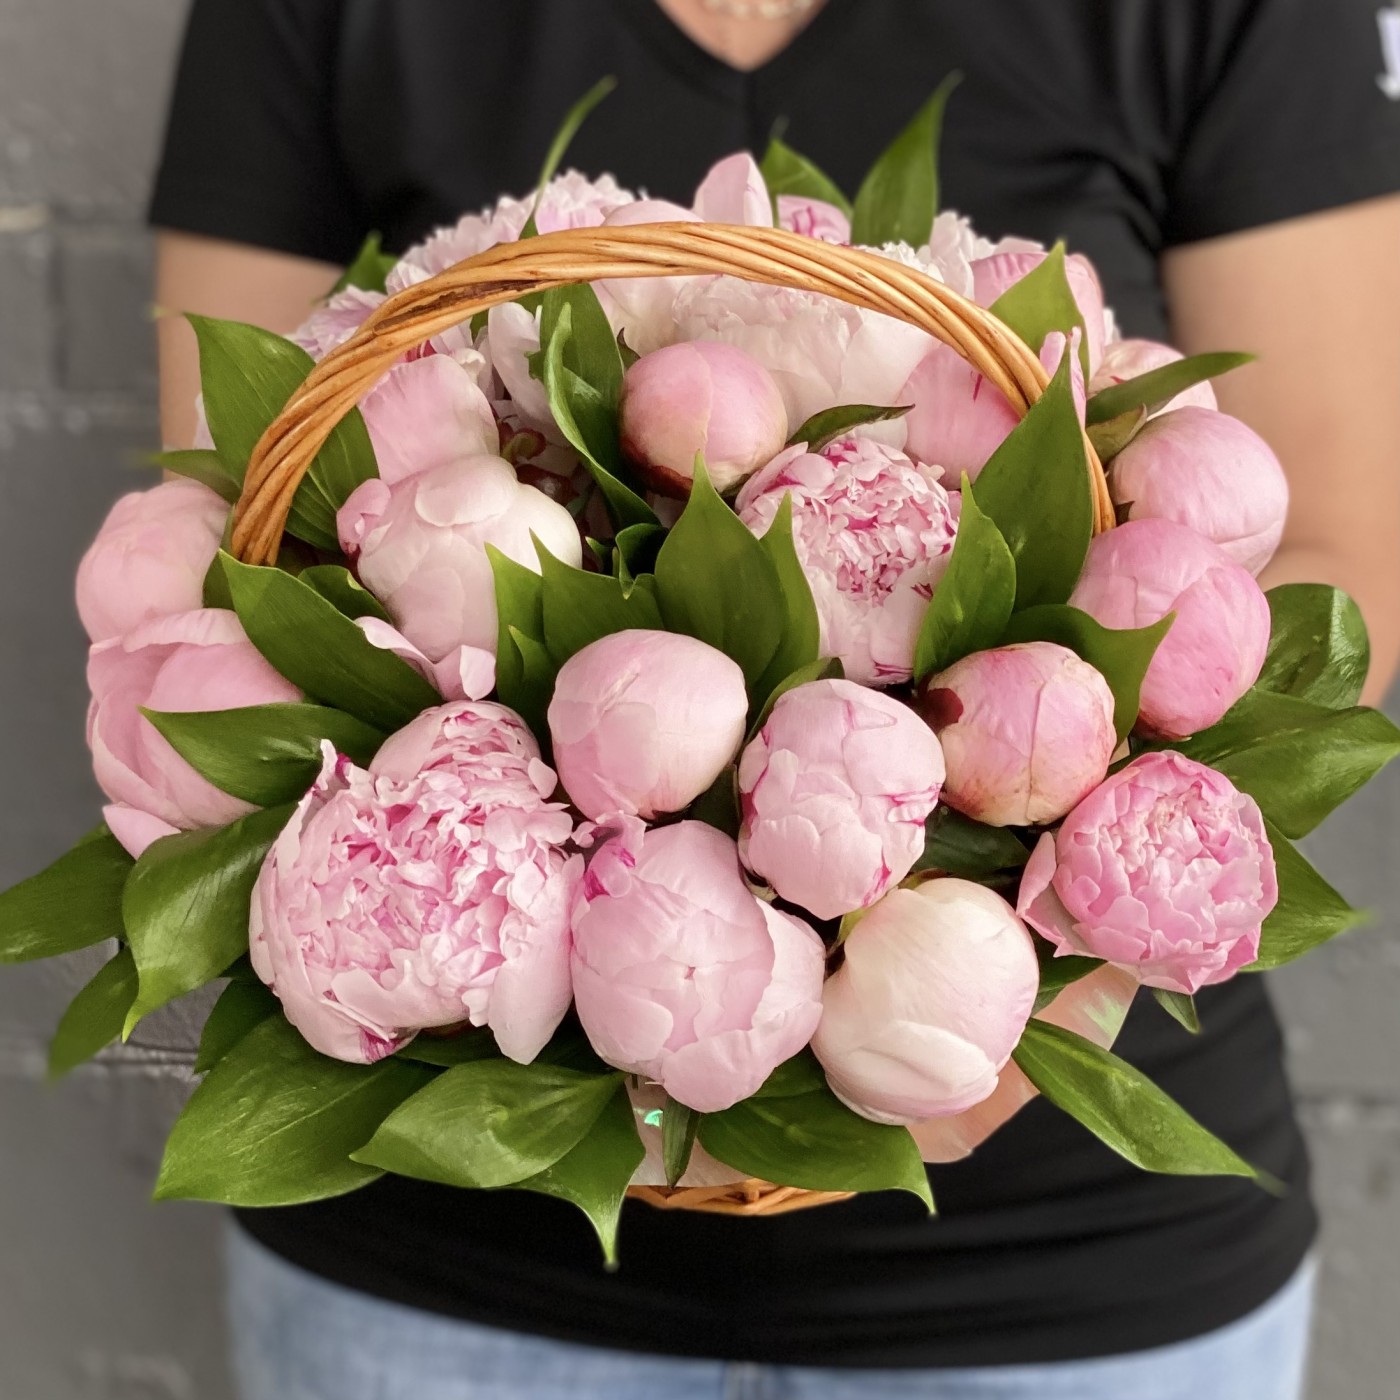 25 розовых пионов Сара Бернар в корзине